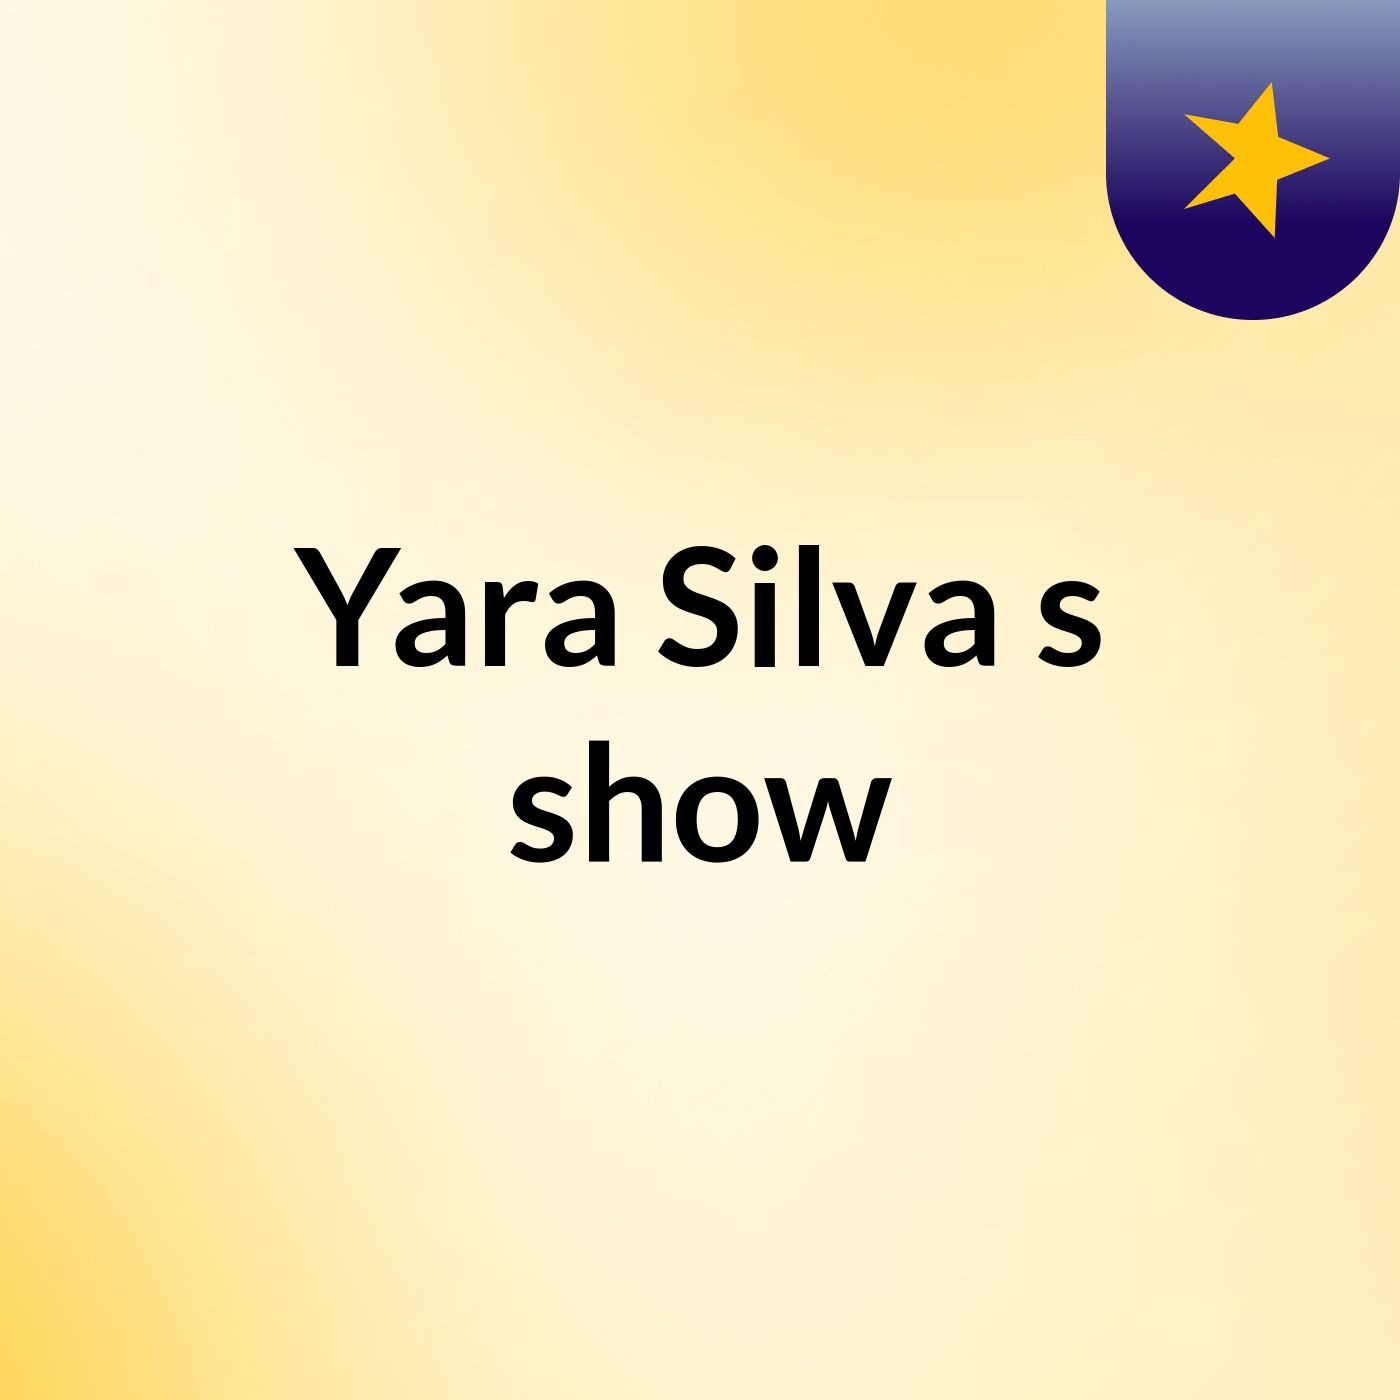 Yara Silva's show